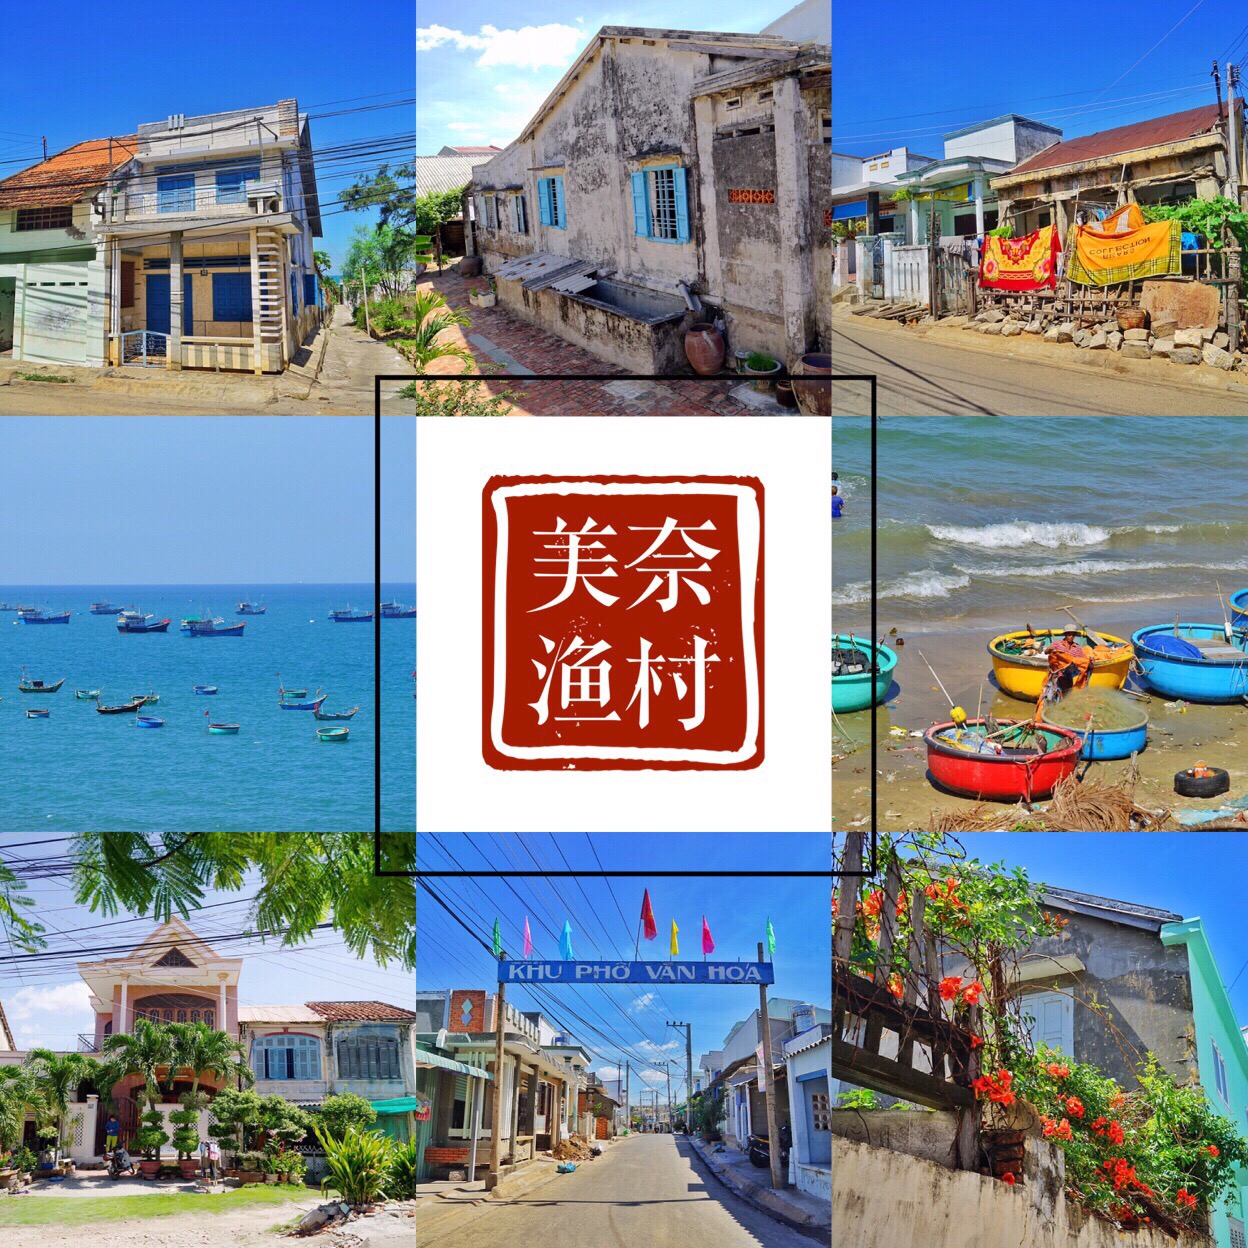 ⛰景点推荐：【美奈.渔村】“美奈”在越南语中意为避风港，渔村的人靠海为生。 美奈渔村至今仍旧保持最原